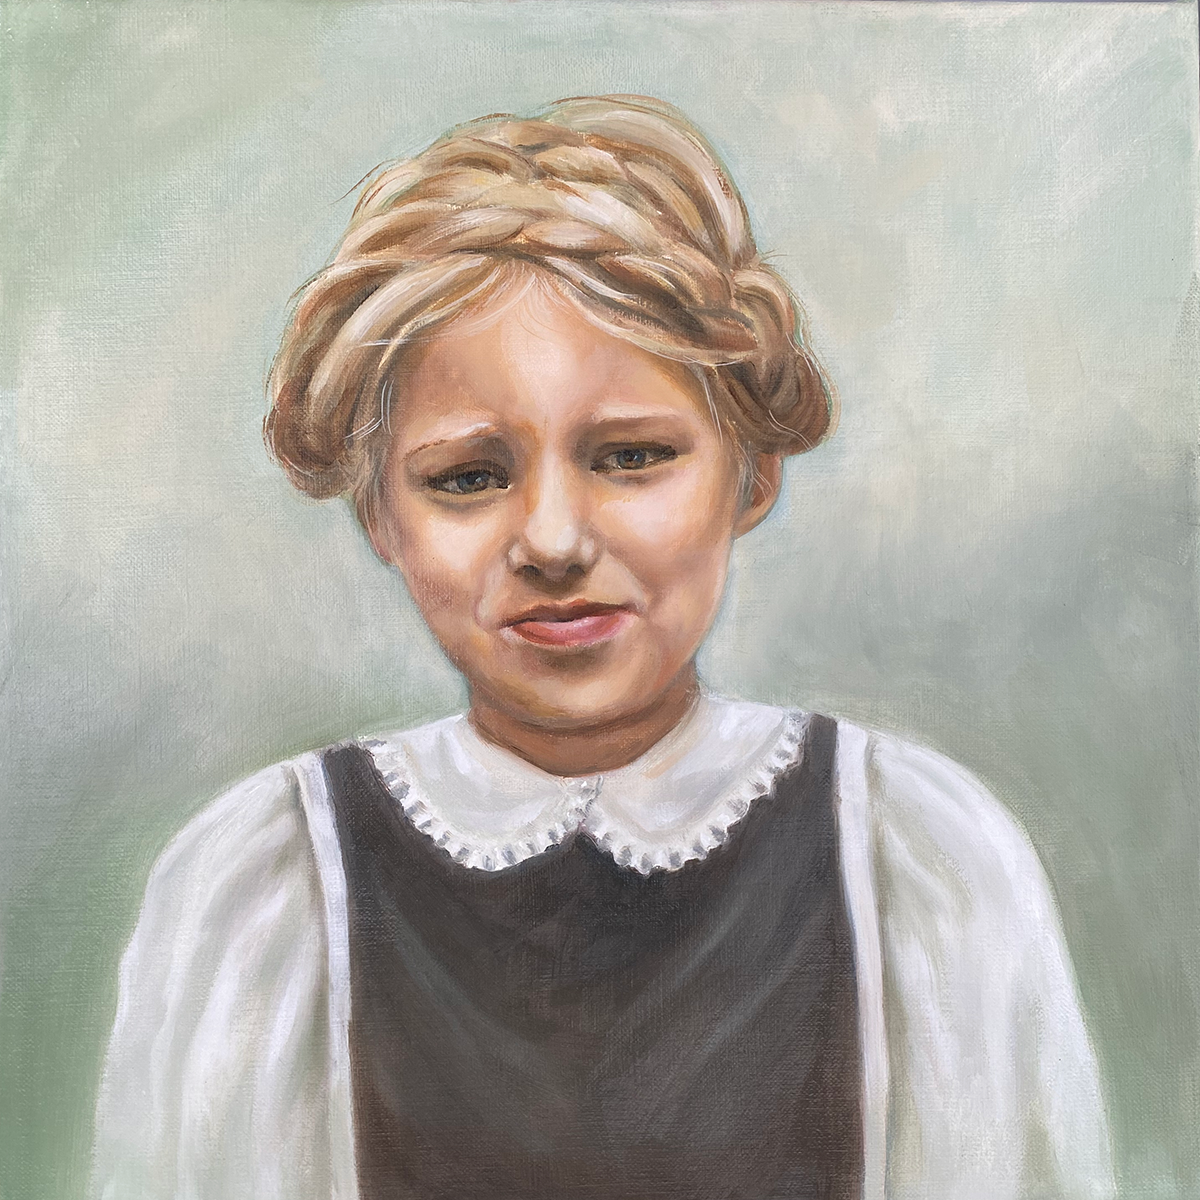 Schilderij van een jong meisje met donkergrijs jurkje en witte blouse tegen een groene achtergrond